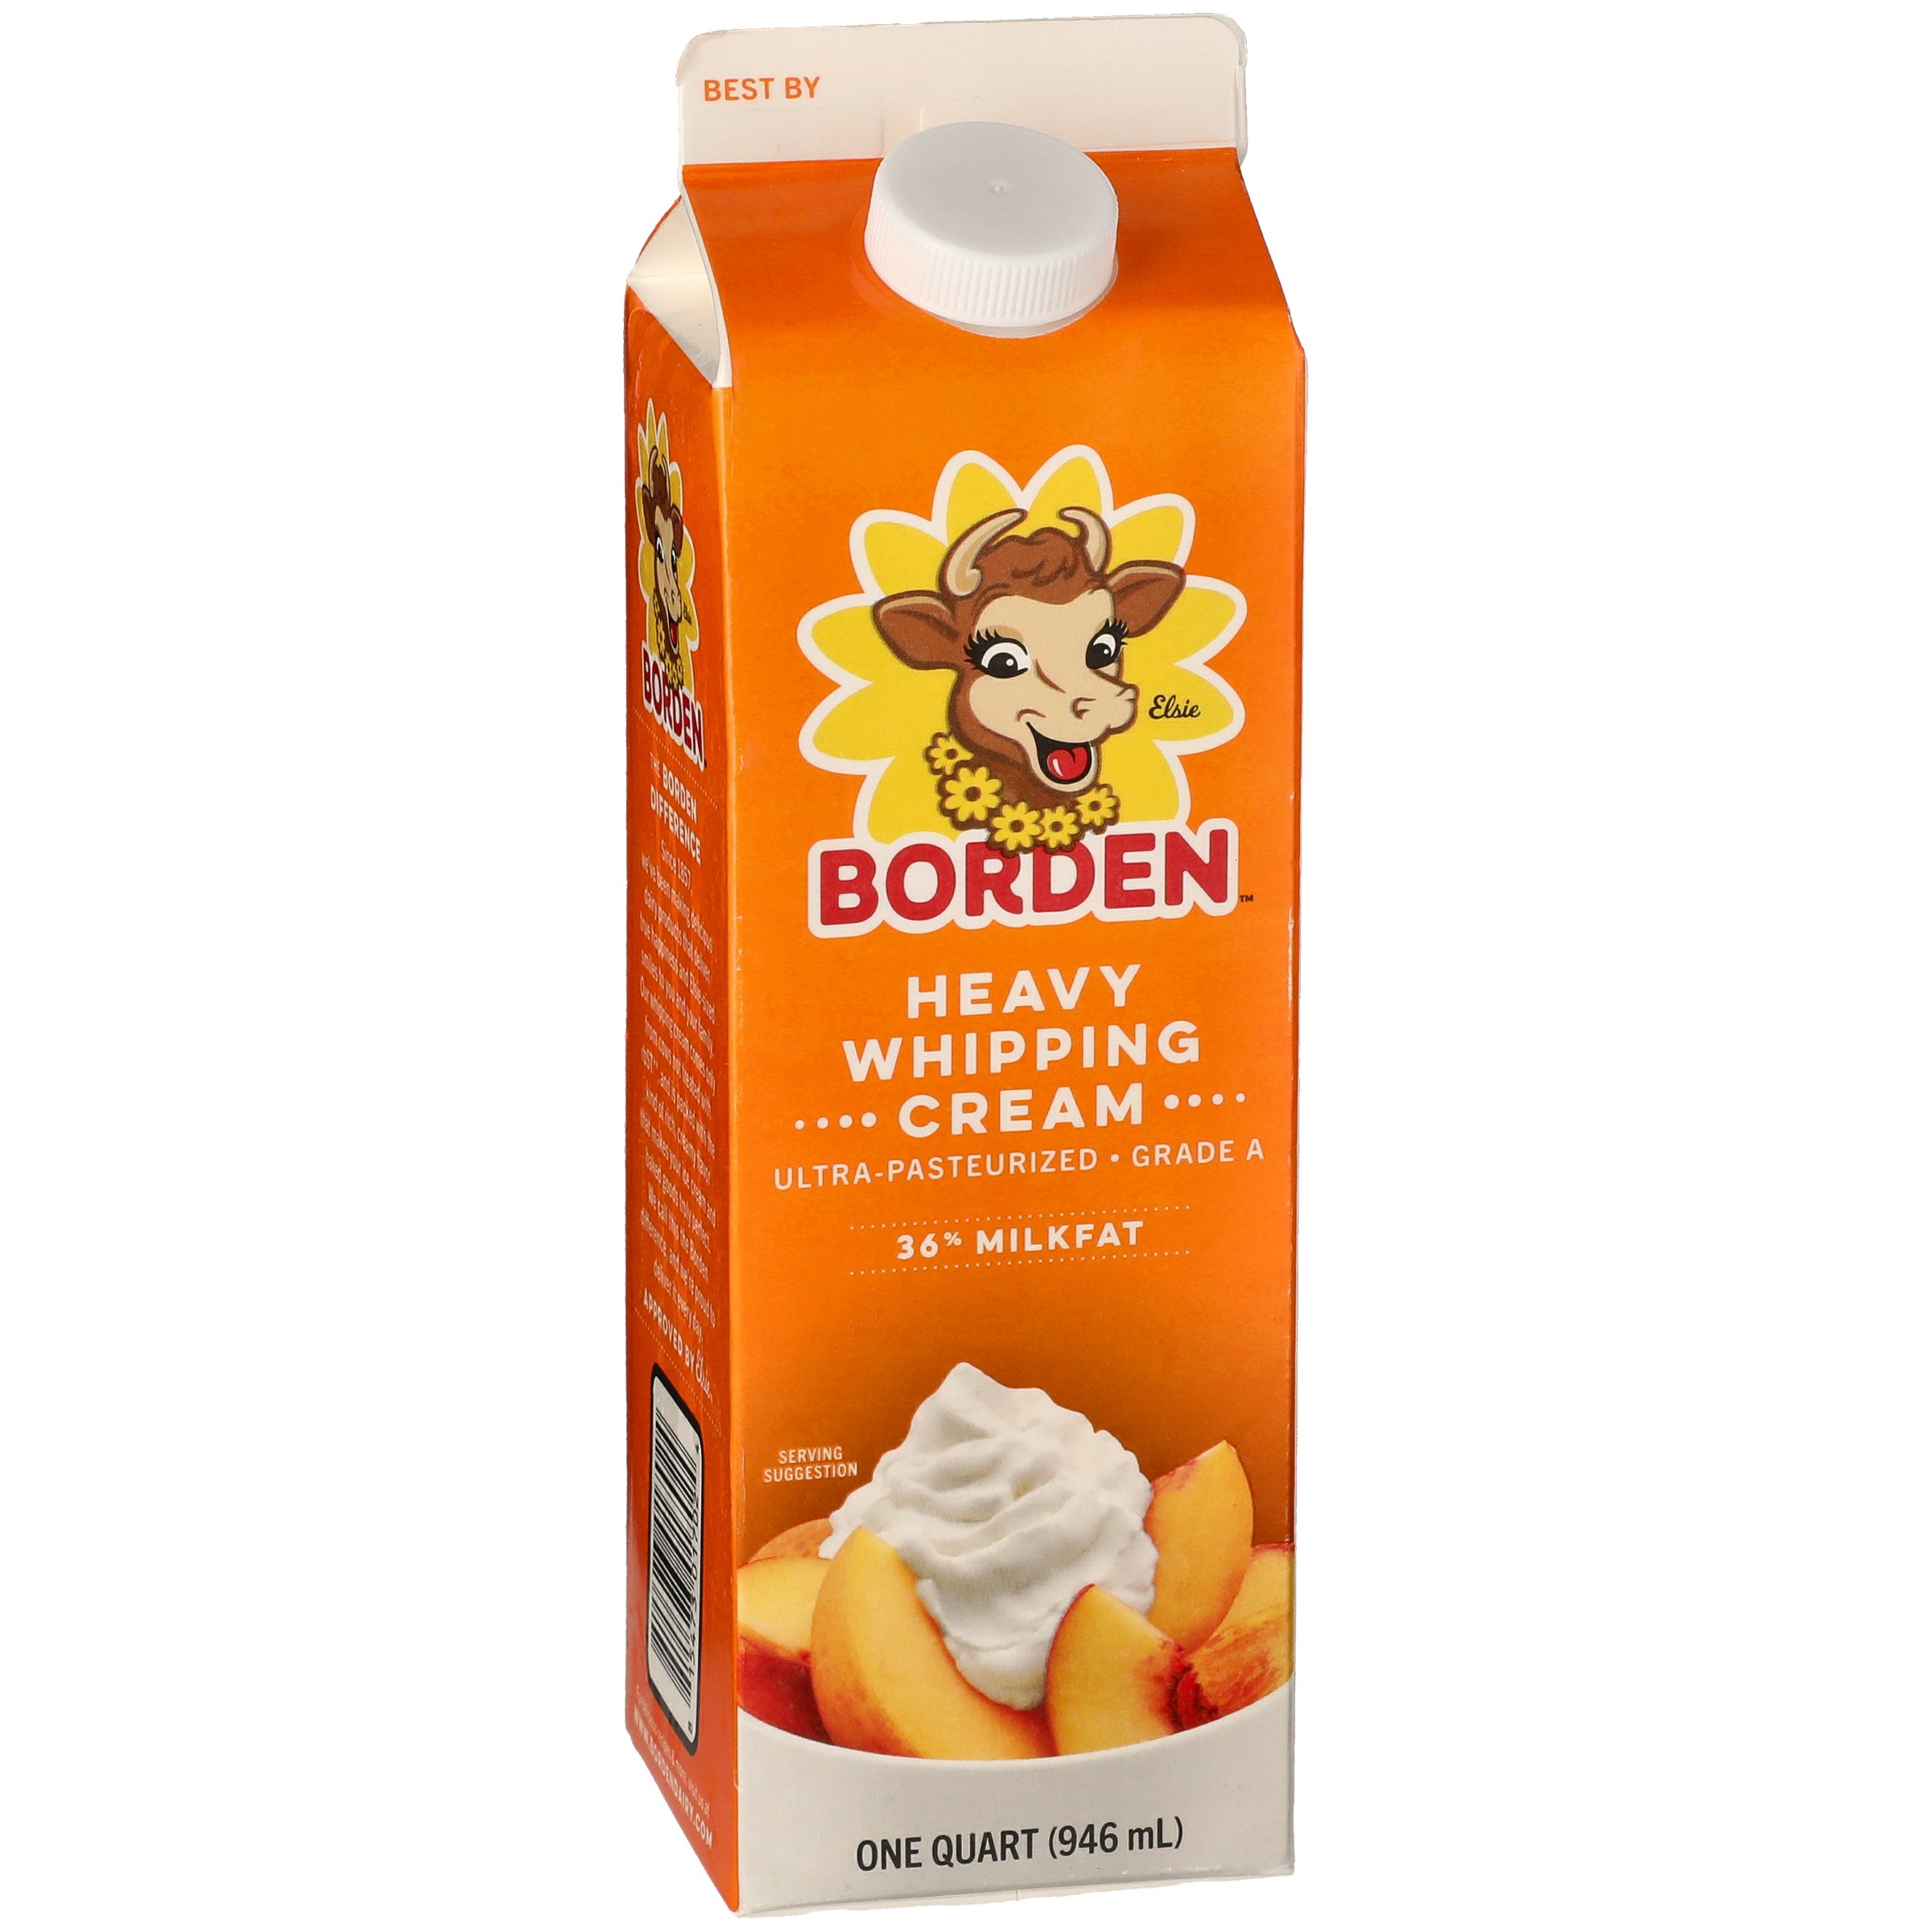 Borden Heavy Whipping Cream Shop Cream At H E B